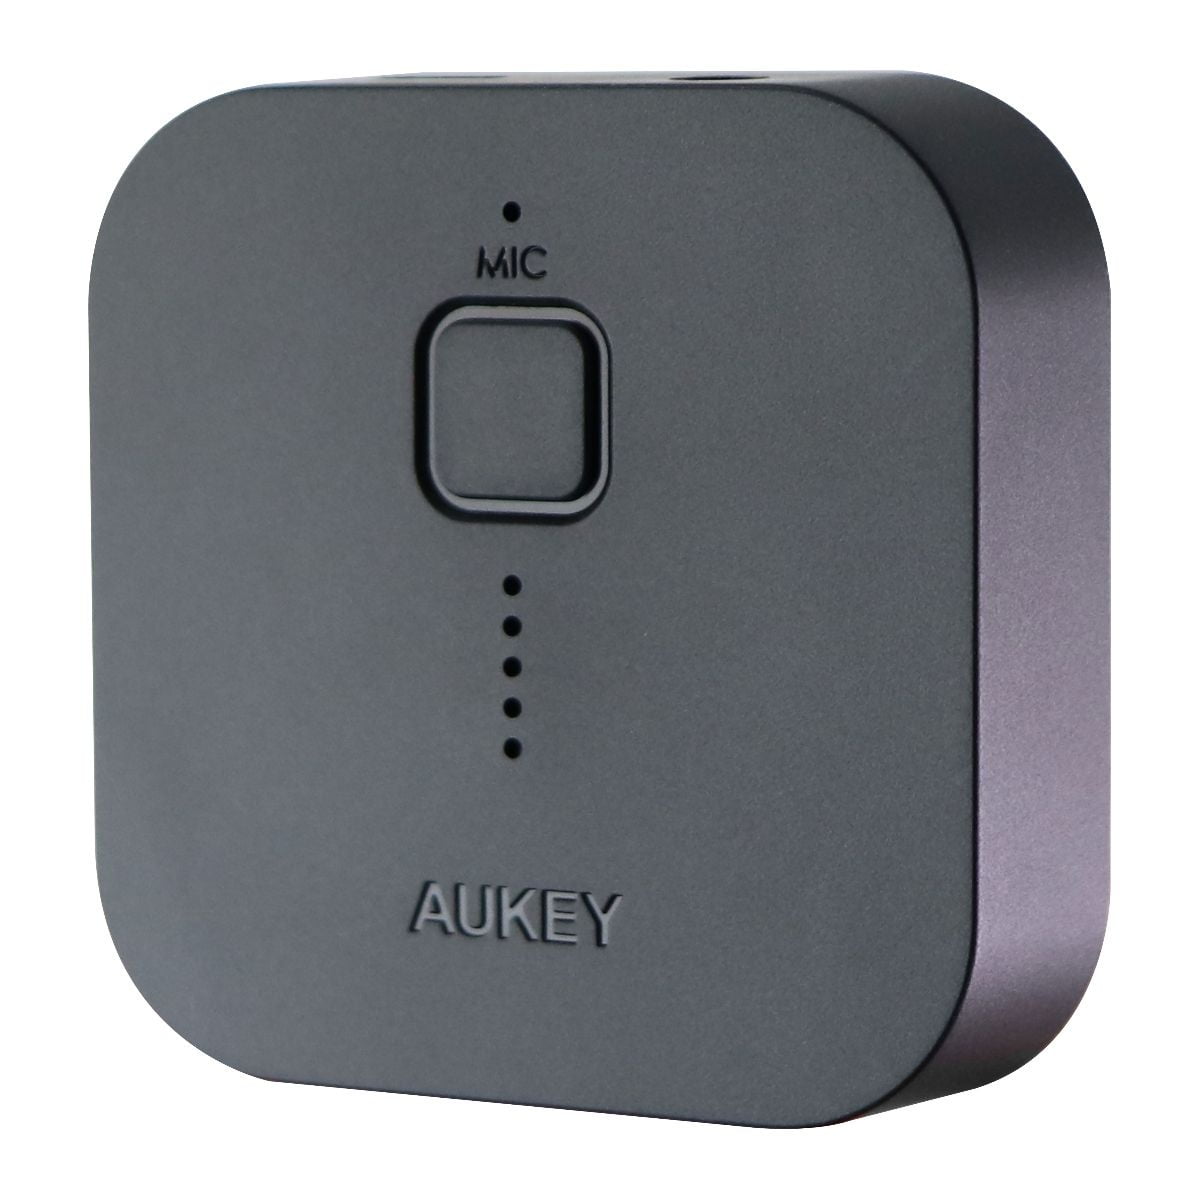 Verdensvindue Kan ikke læse eller skrive Tilskynde Aukey Bluetooth 5.0 Wireless Receiver Audio Music Adapter - Black (BR-C1)  (Refurbished) | Walmart Canada